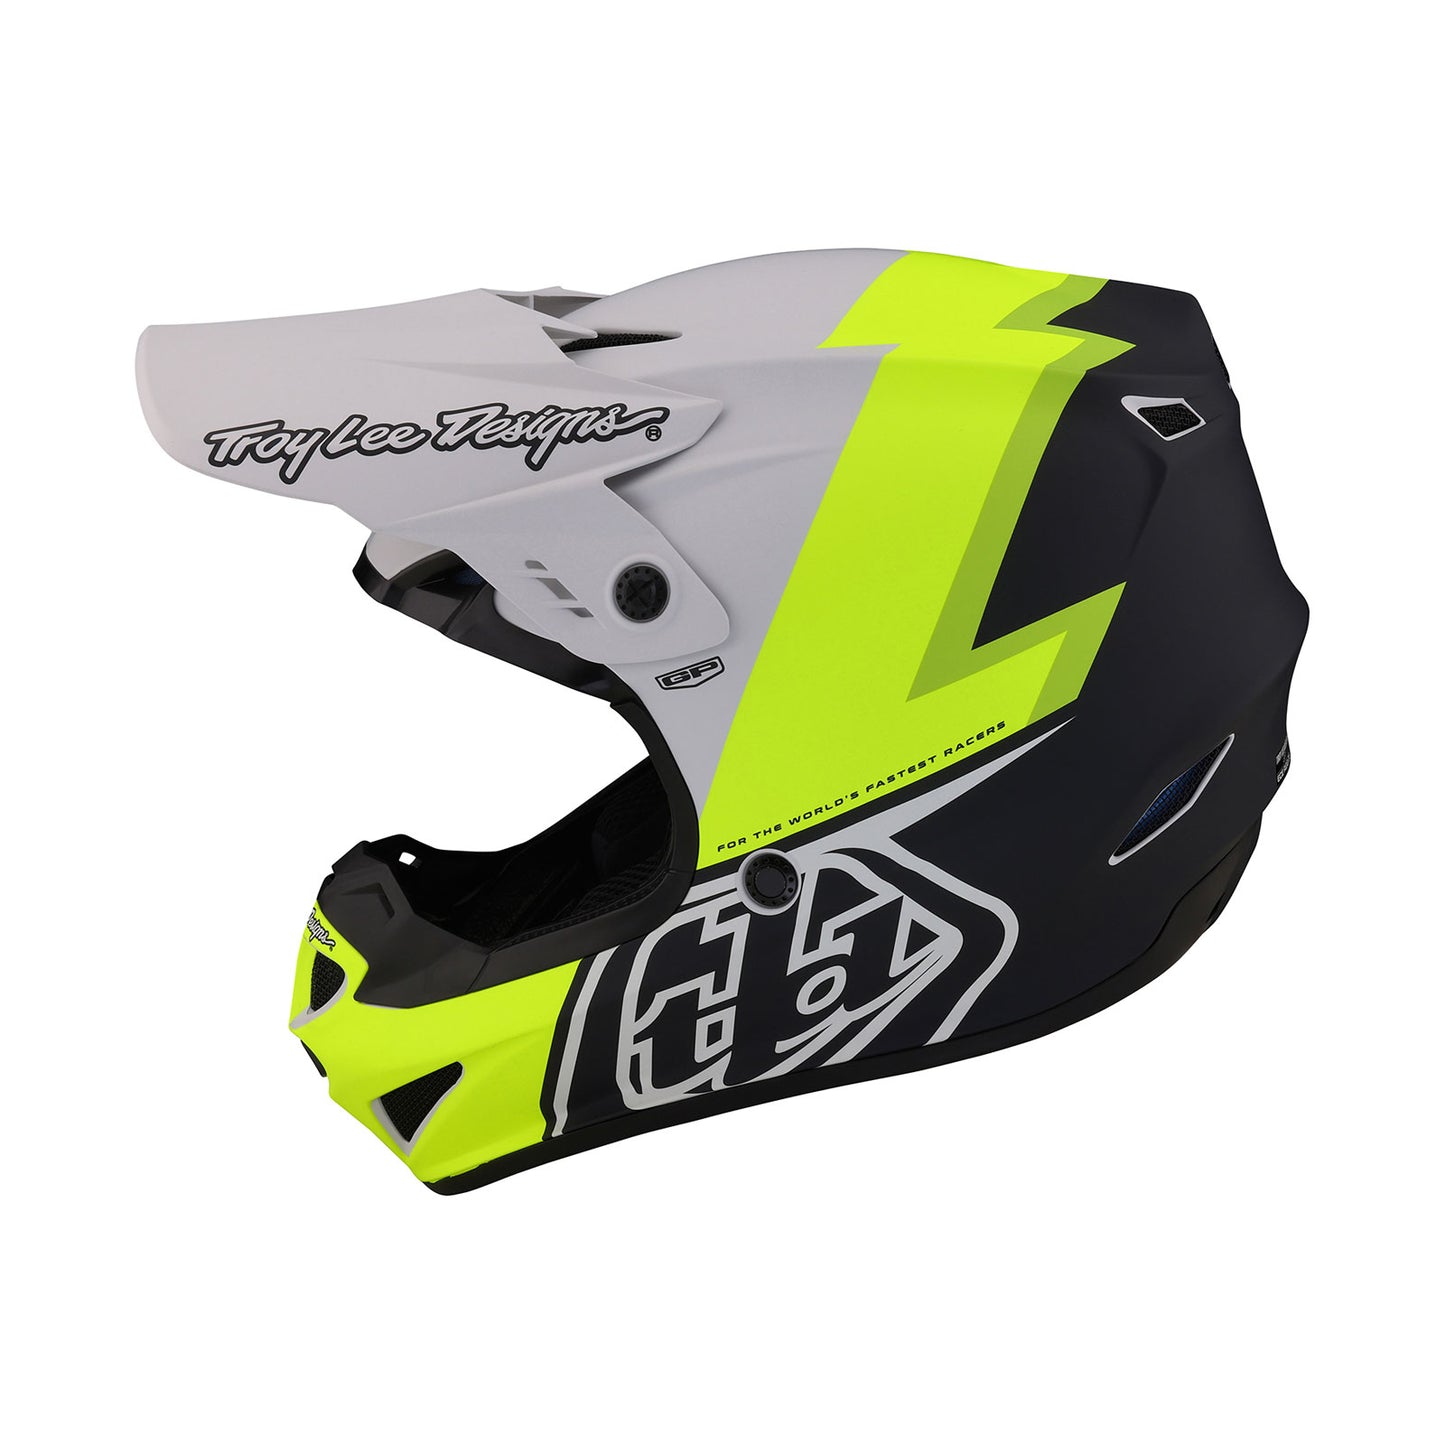 Troy Lee Designs SE5 Composite Helmet -Saber Fog